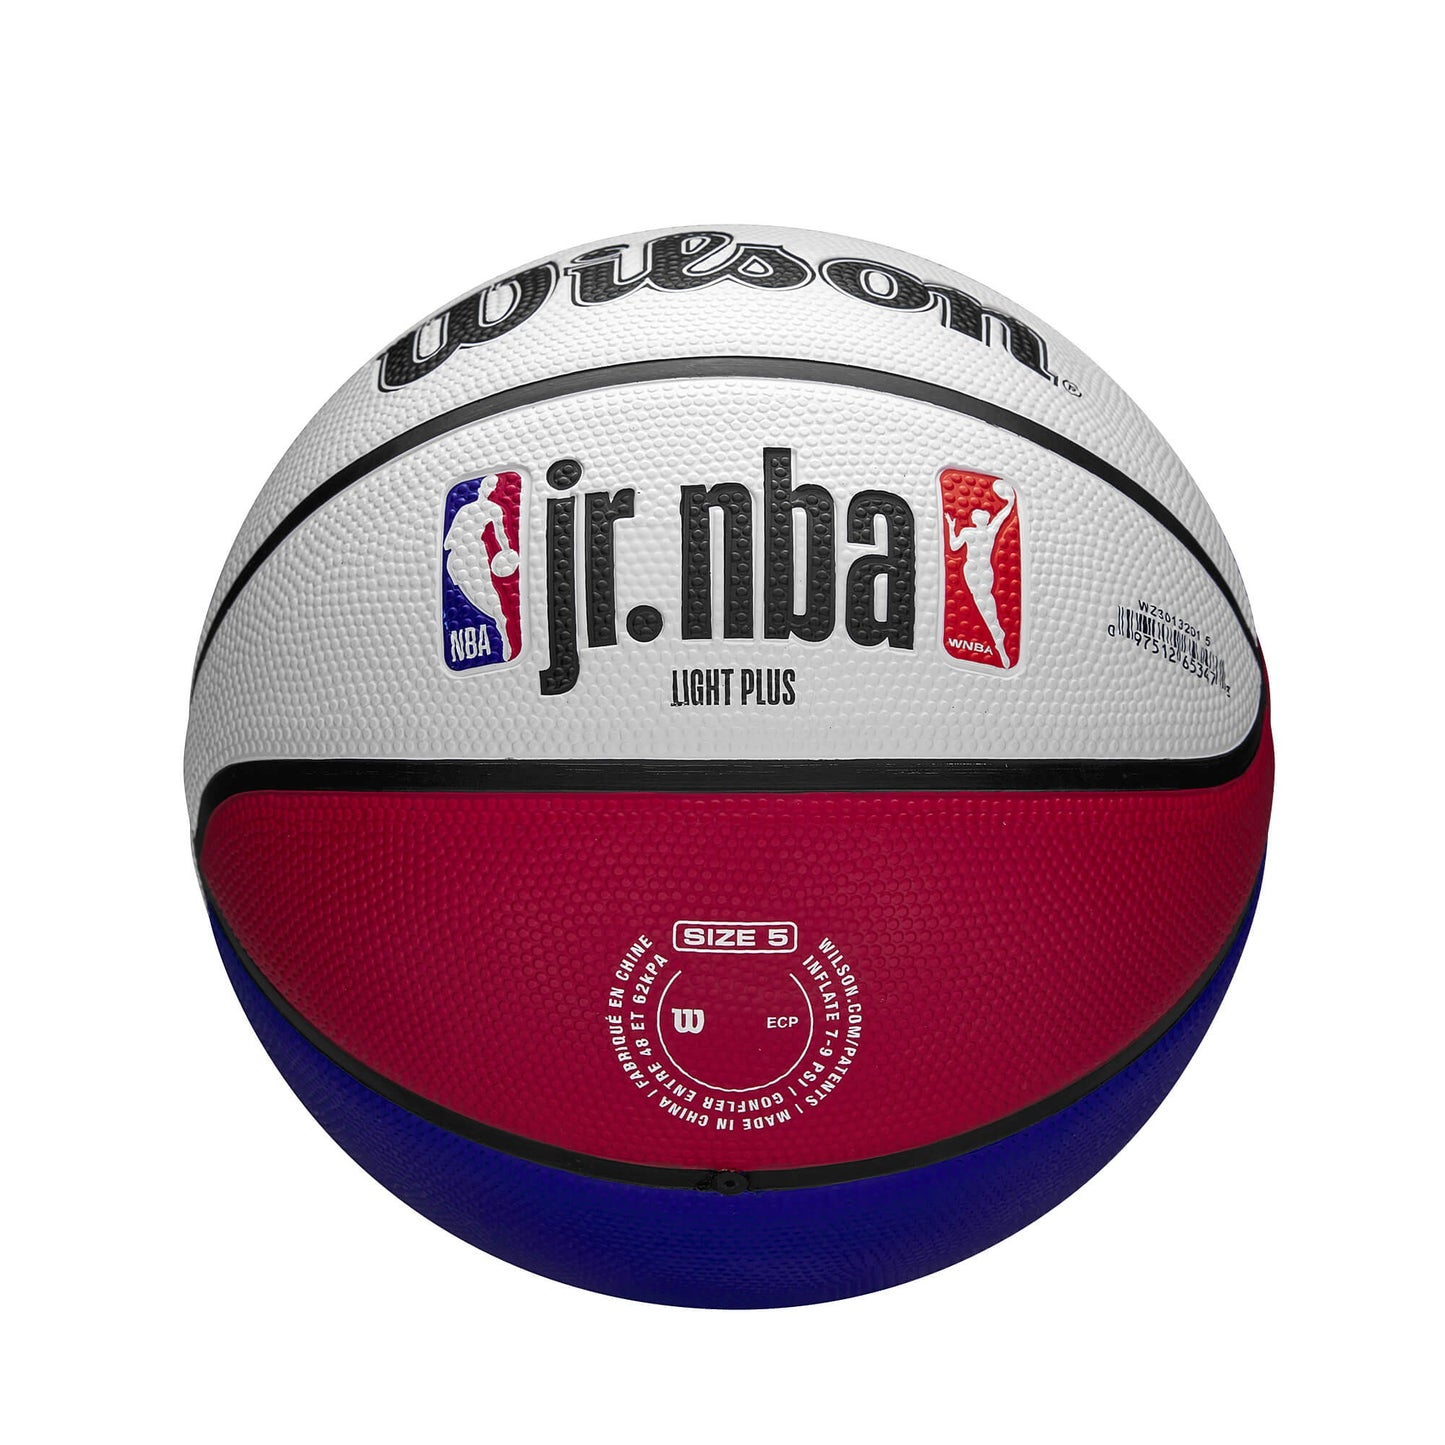 Wilson Jr. NBA Drv Light Fam Logo Bskt. (sz. 5) Blue/Red/White